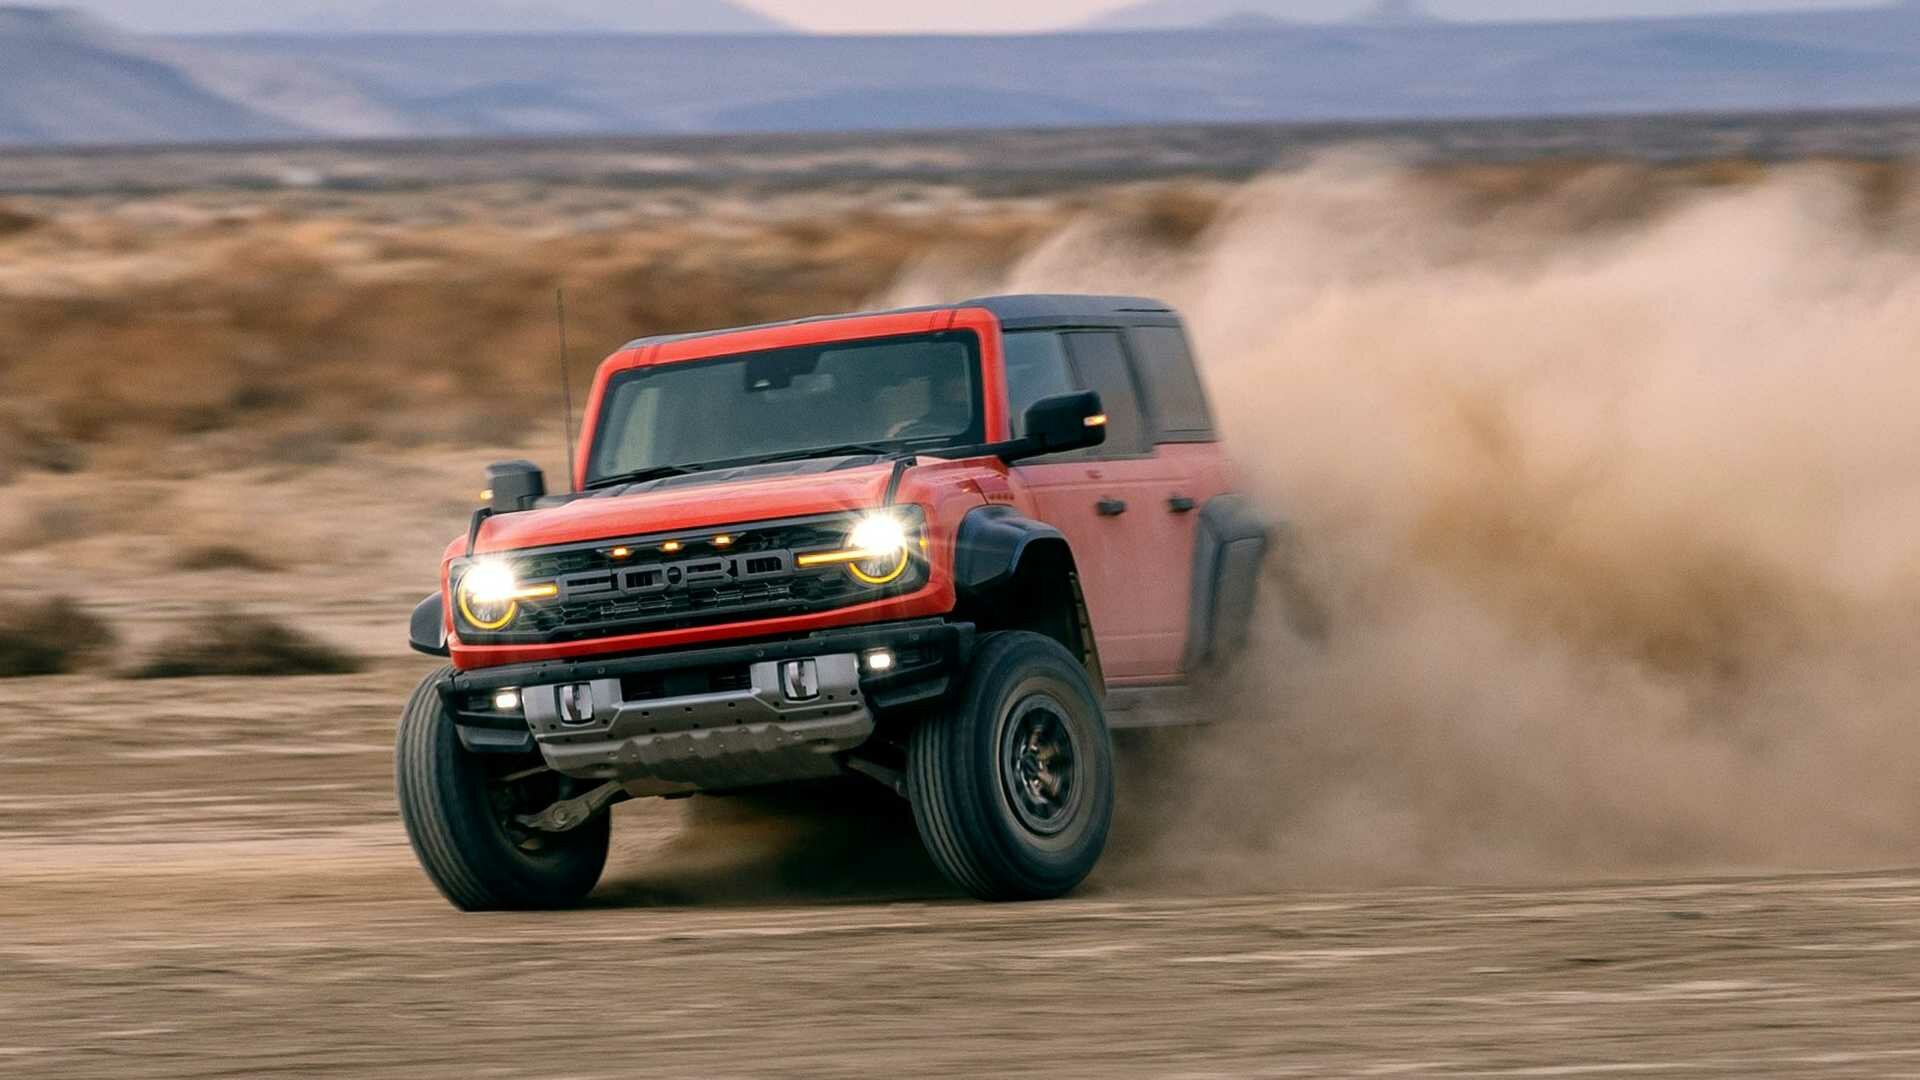 Представлен хардкорный Ford Bronco Raptor: 400 сил и 330-миллиметровый клиренс